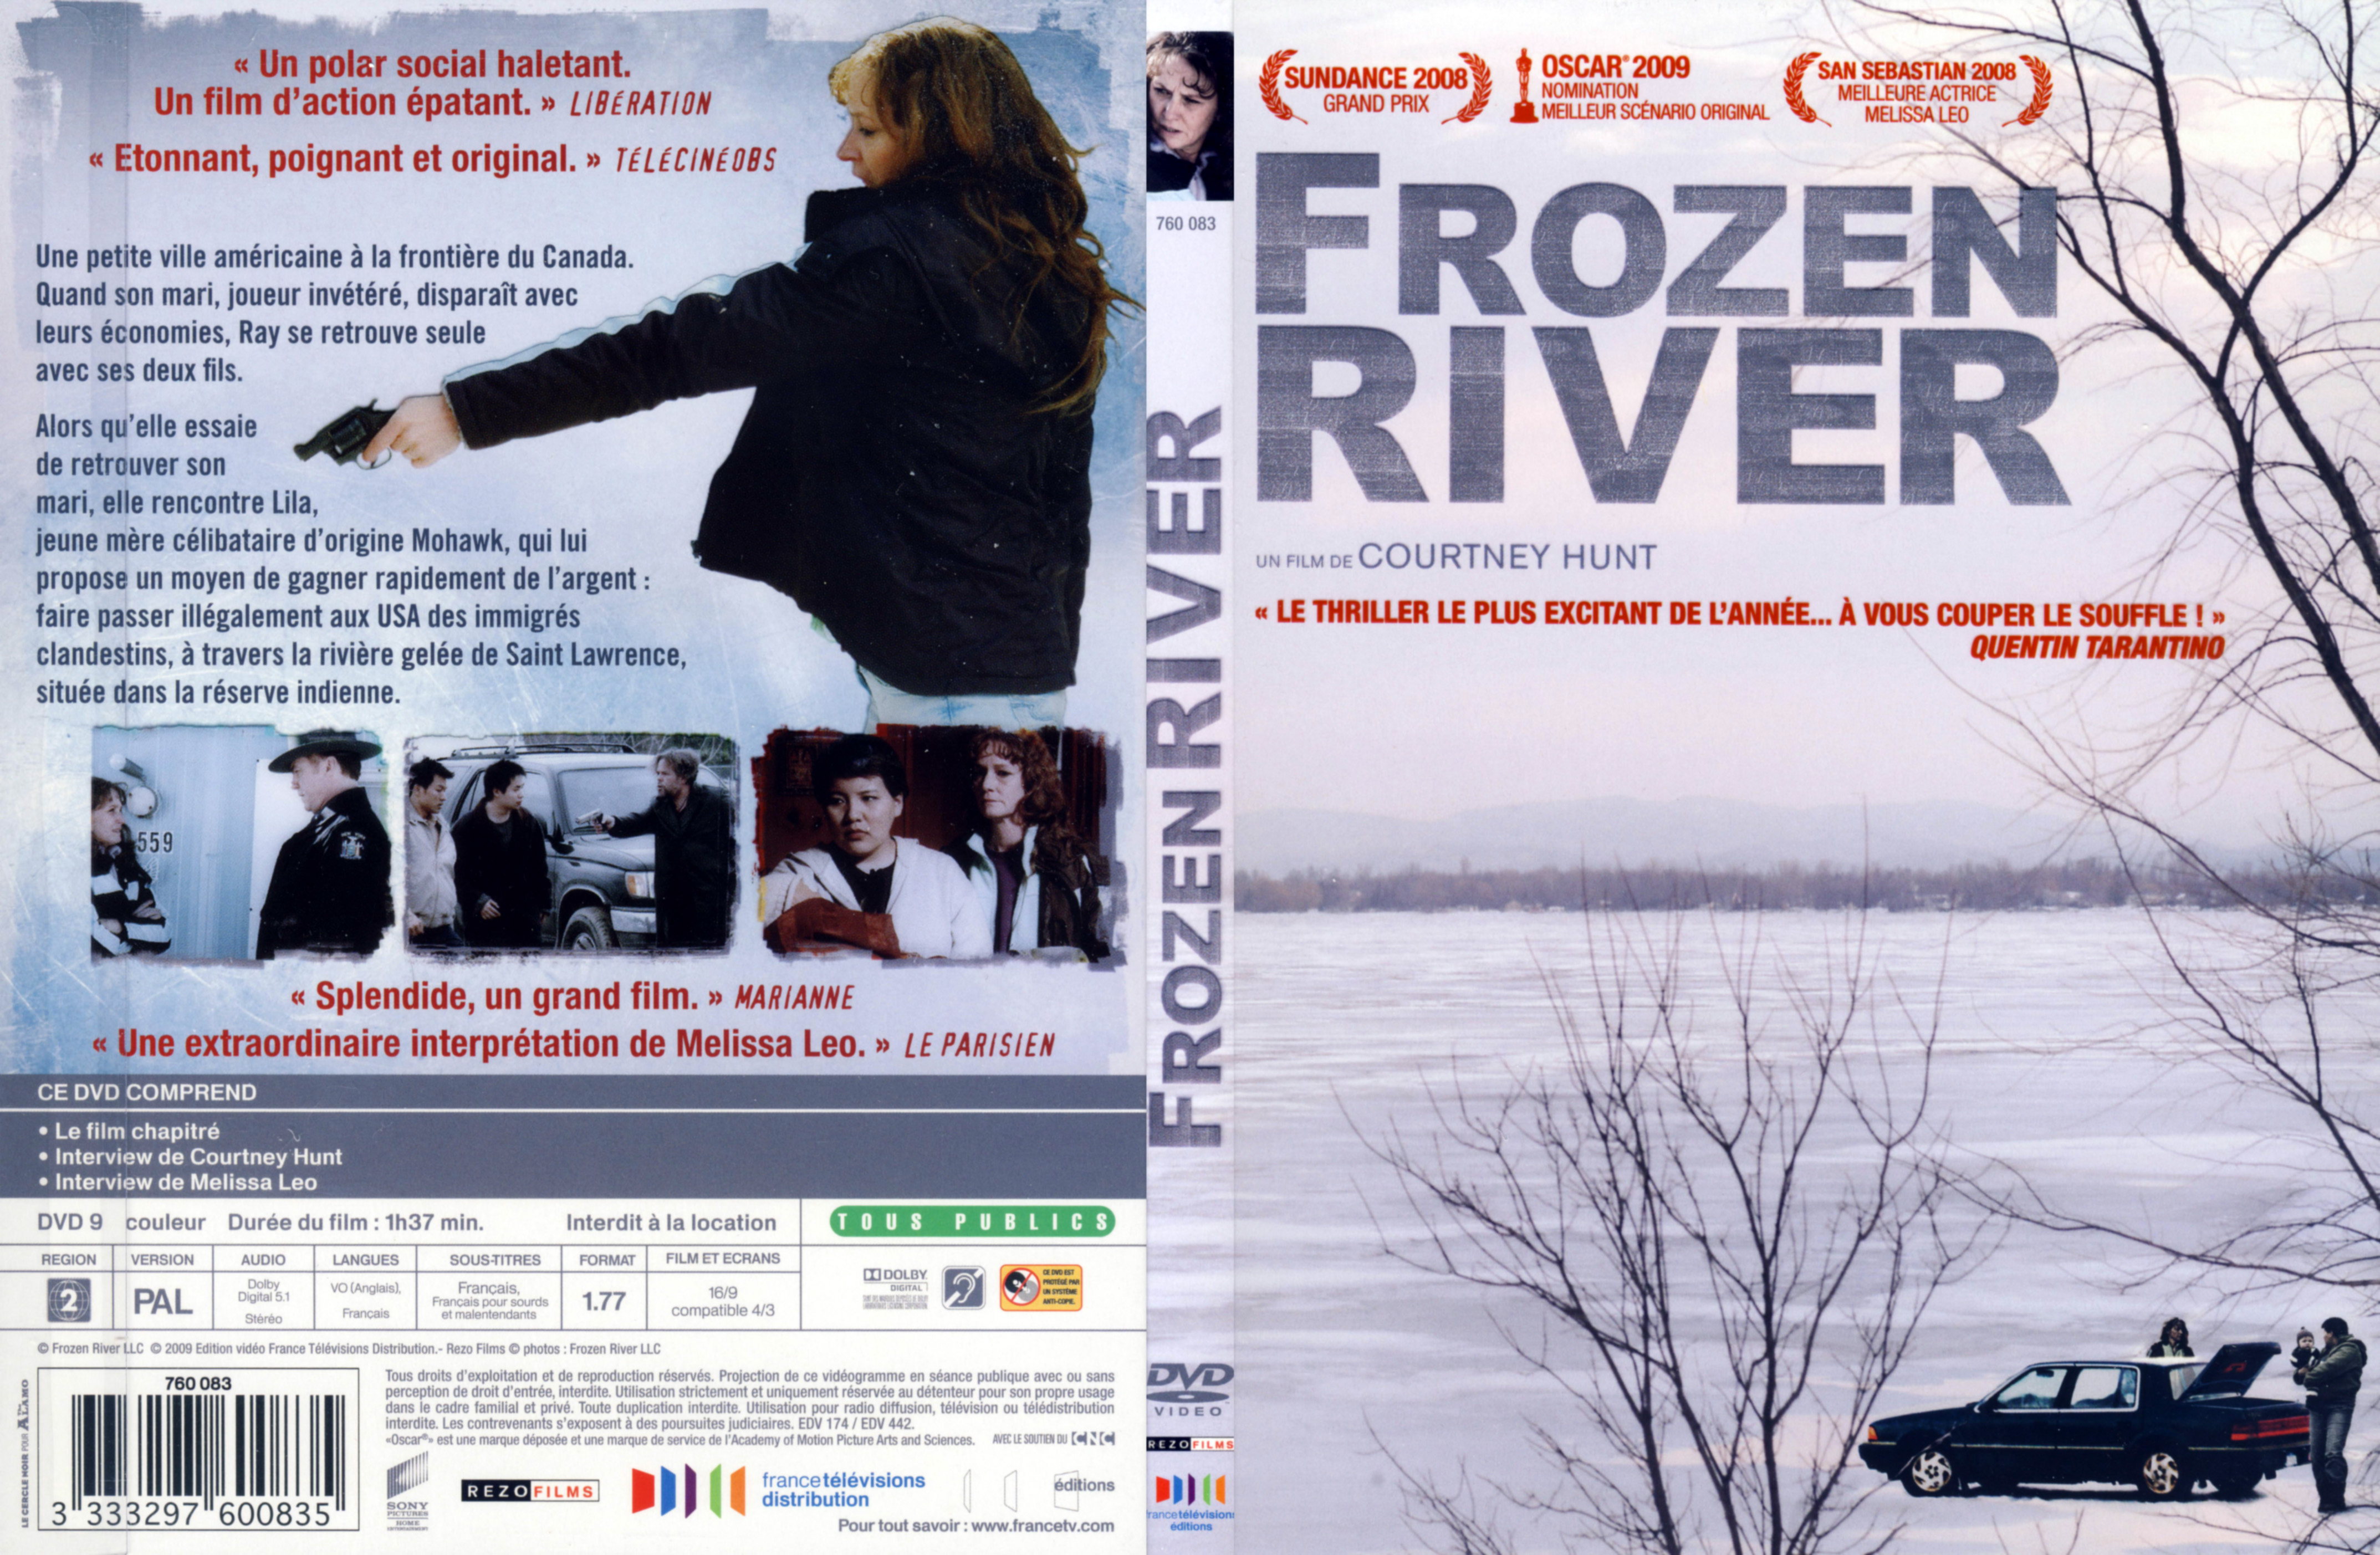 Jaquette DVD Frozen river (dpi 400)